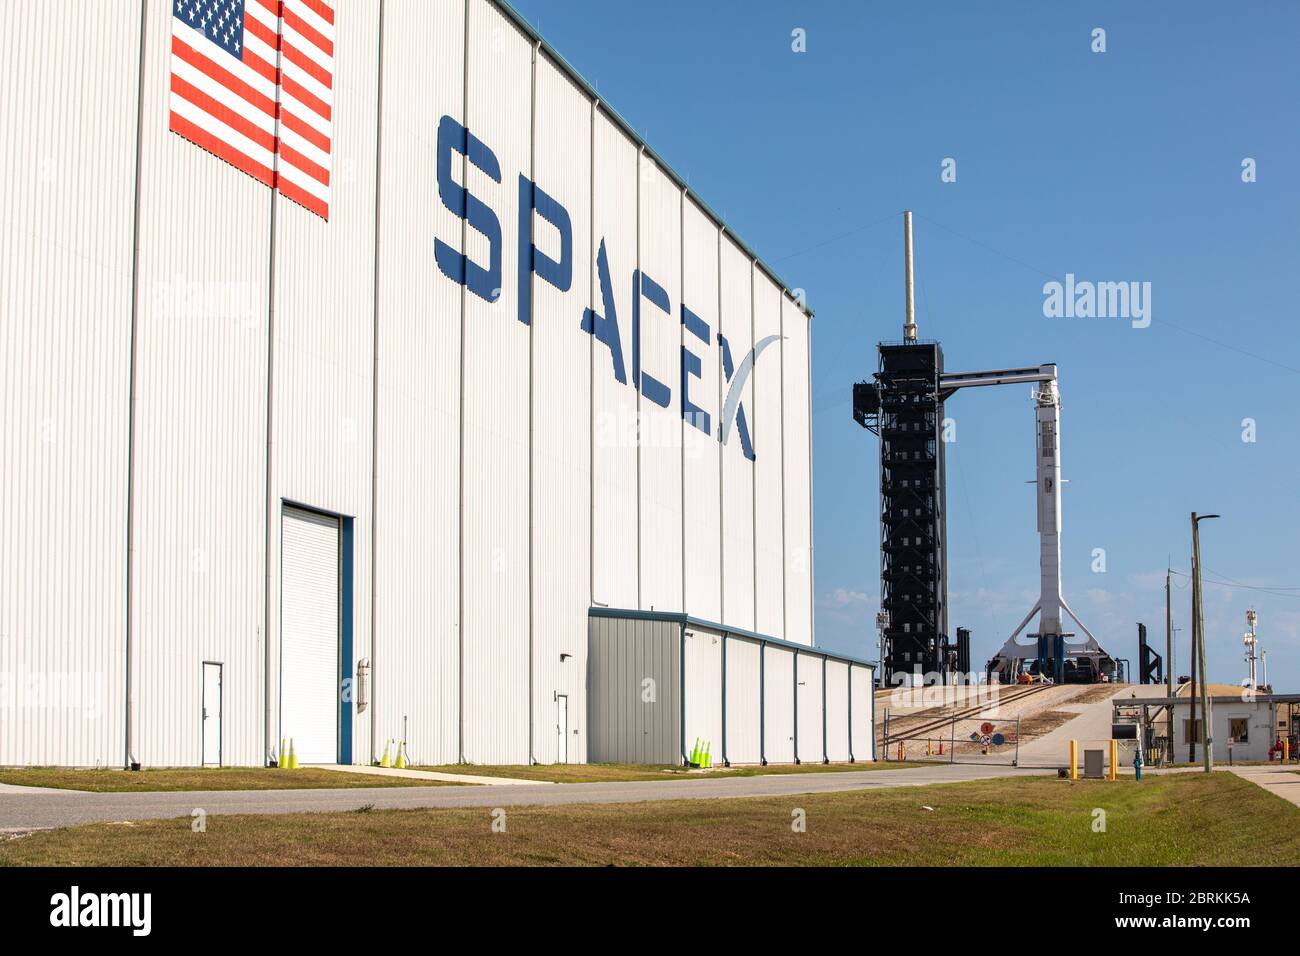 Cape Canaveral, Vereinigte Staaten von Amerika. 21 Mai 2020. Die SpaceX Falcon 9 Rakete, die die Crew Dragon Raumsonde trägt, ist in einer vertikalen Position sicher, wobei der Crew-Zufahrtsarm für den AT Launch Complex 39A für die Demo-2 Mission im Kennedy Space Center vorbereitet ist 21. Mai 2020 in Cape Canaveral, Florida. Die NASA SpaceX Demo-2 Mission ist der erste kommerzielle Start, der Astronauten zur Internationalen Raumstation transportiert. Quelle: Kim Shiflett/NASA/Alamy Live News Stockfoto